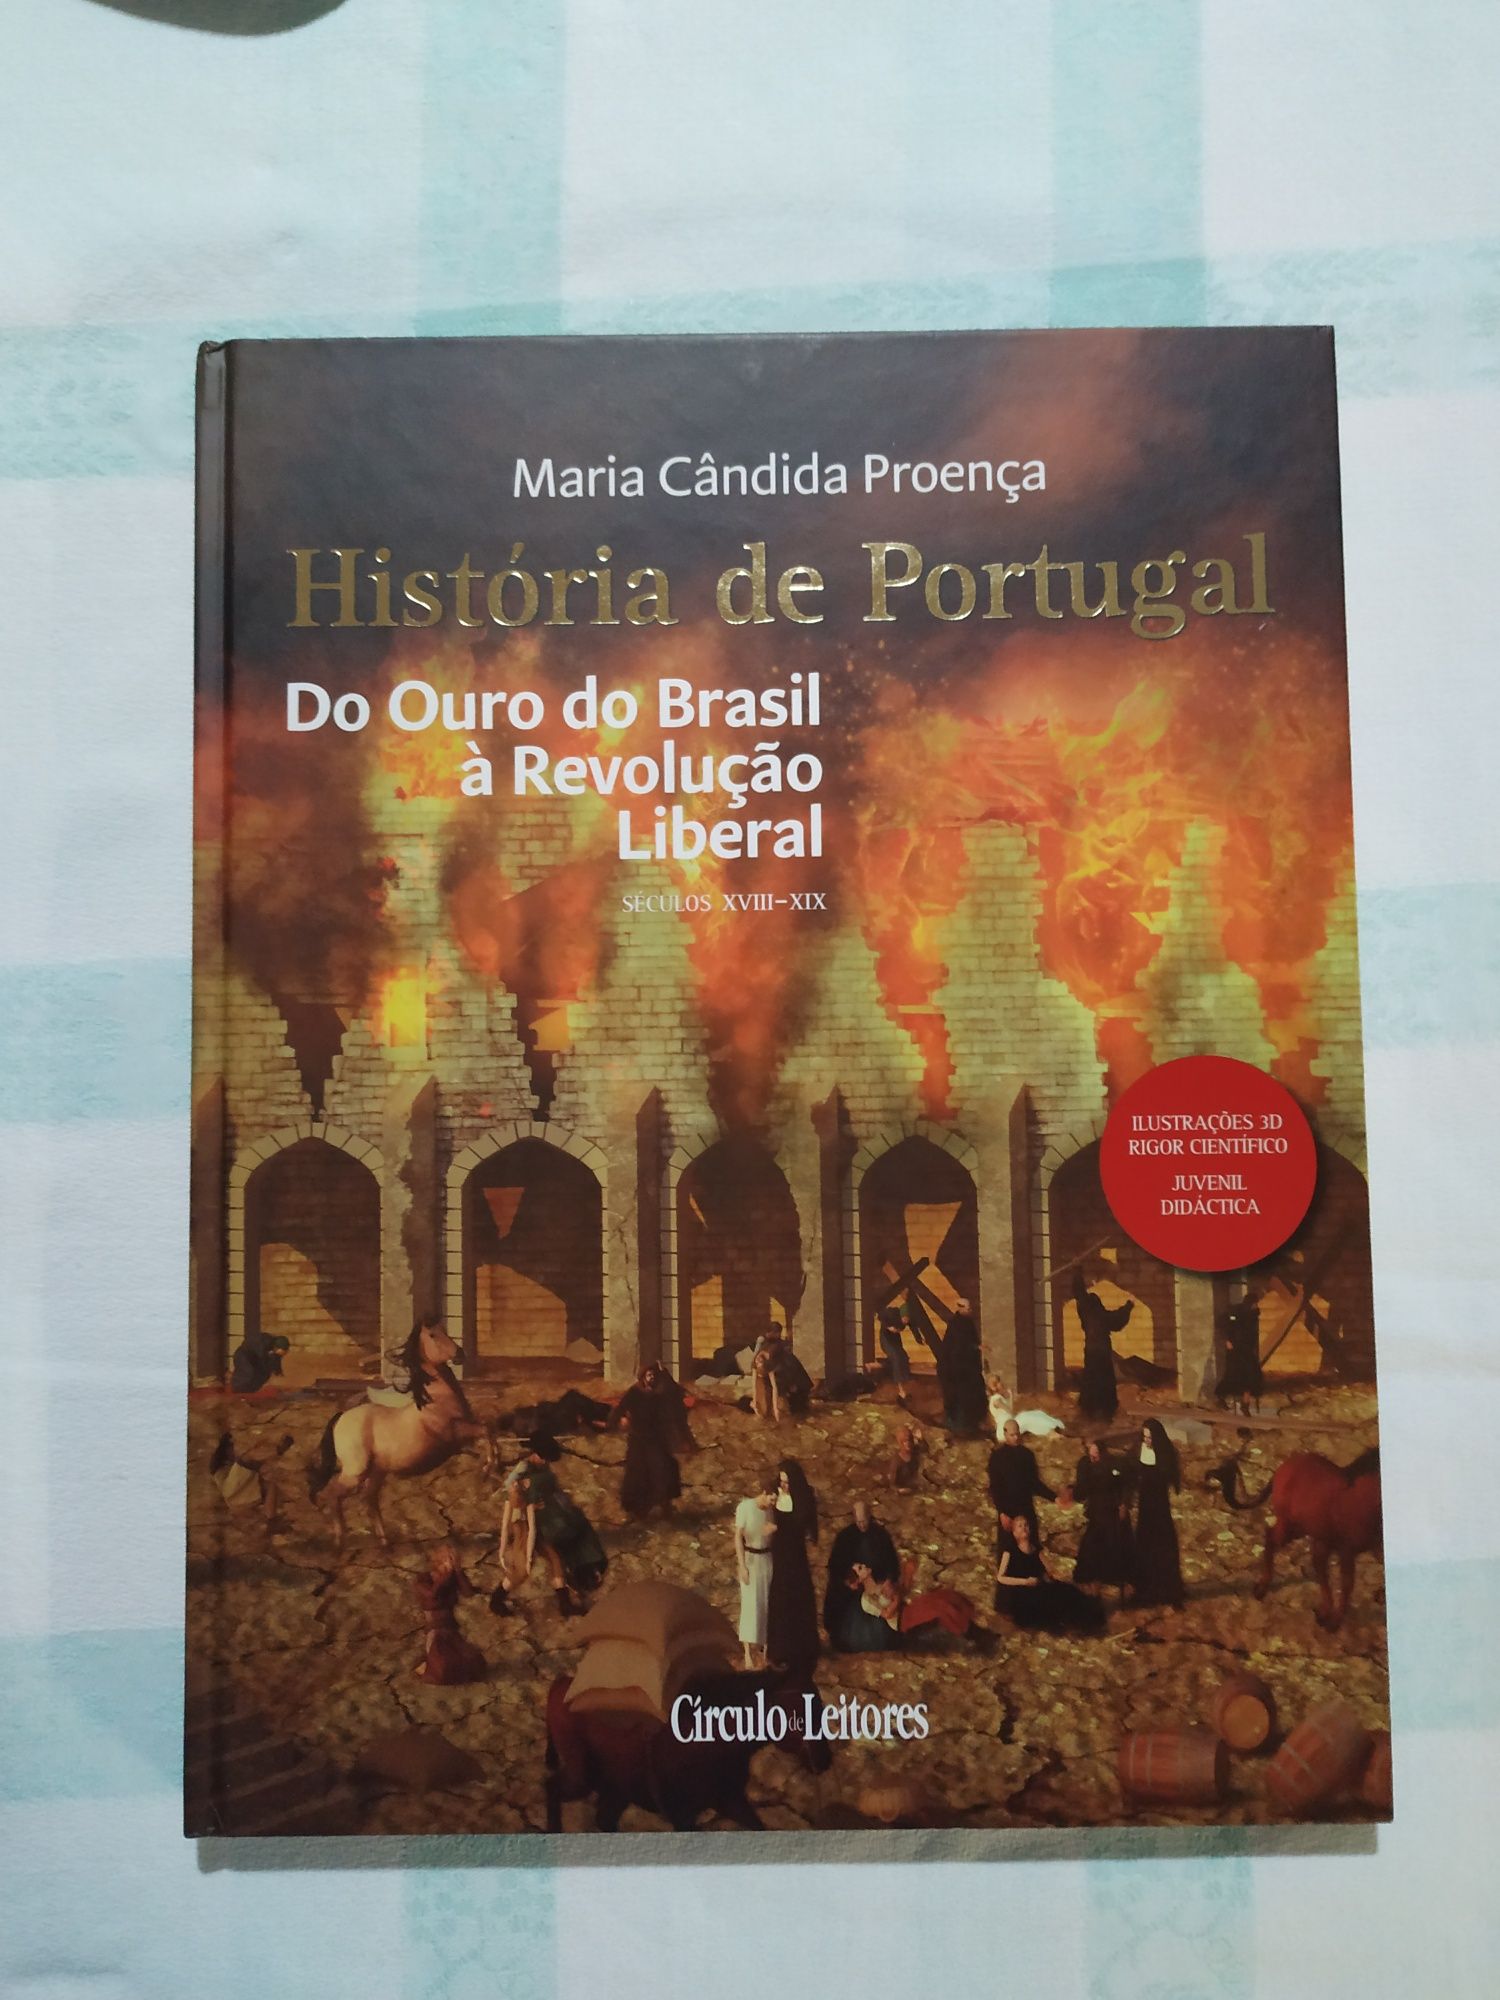 Livro "Do ouro do Brasil à revolução liberal"